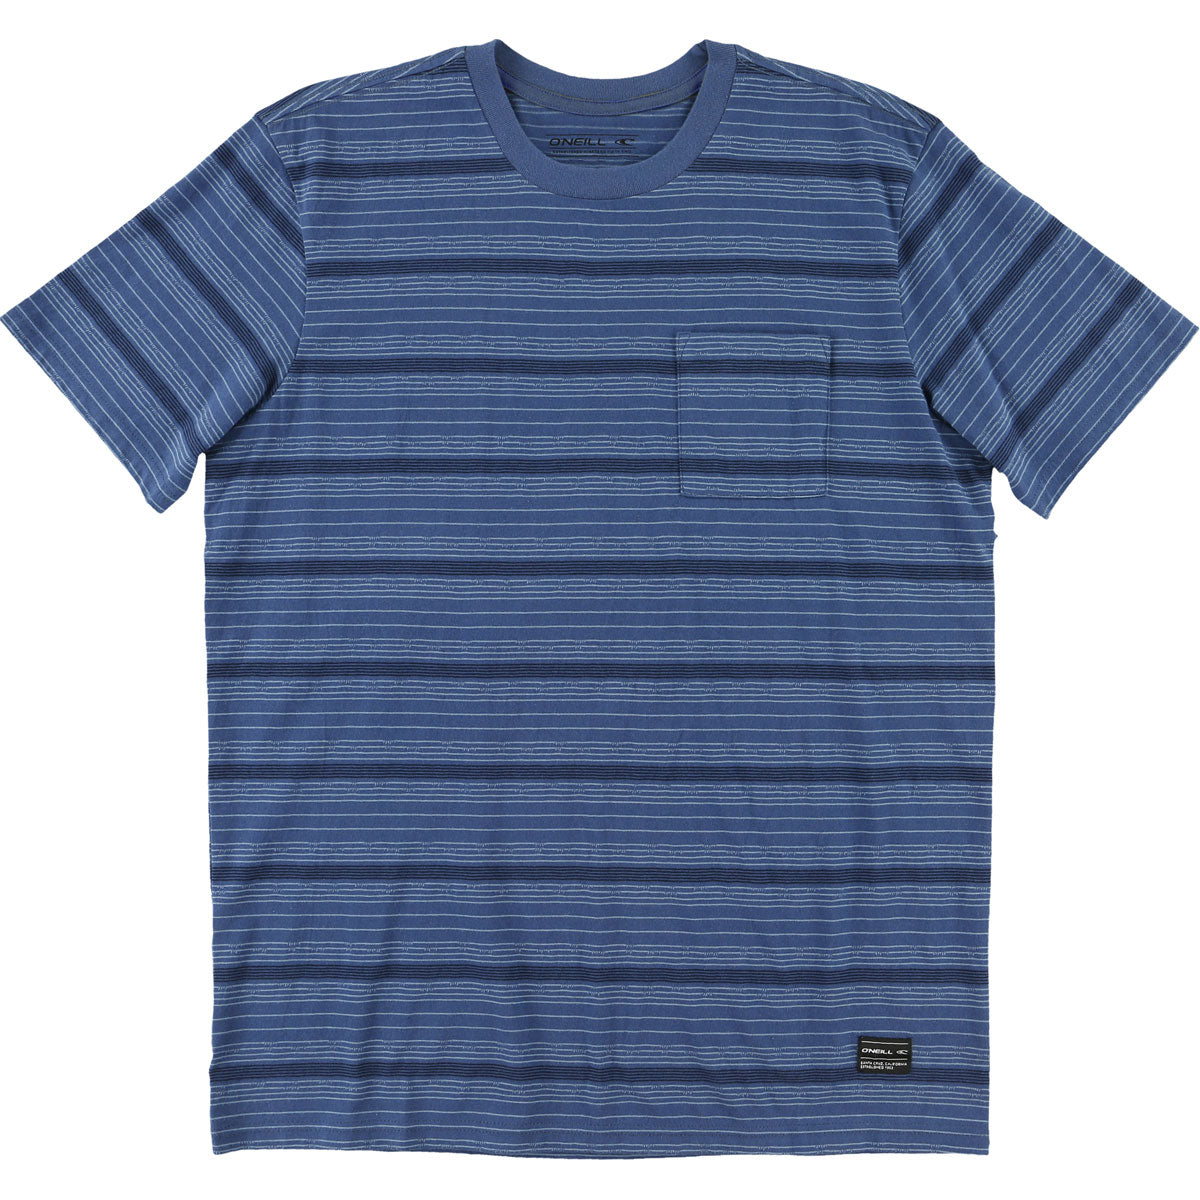 O'Neill Saint Lorin Crew Men's Short-Sleeve Shirts - Blue